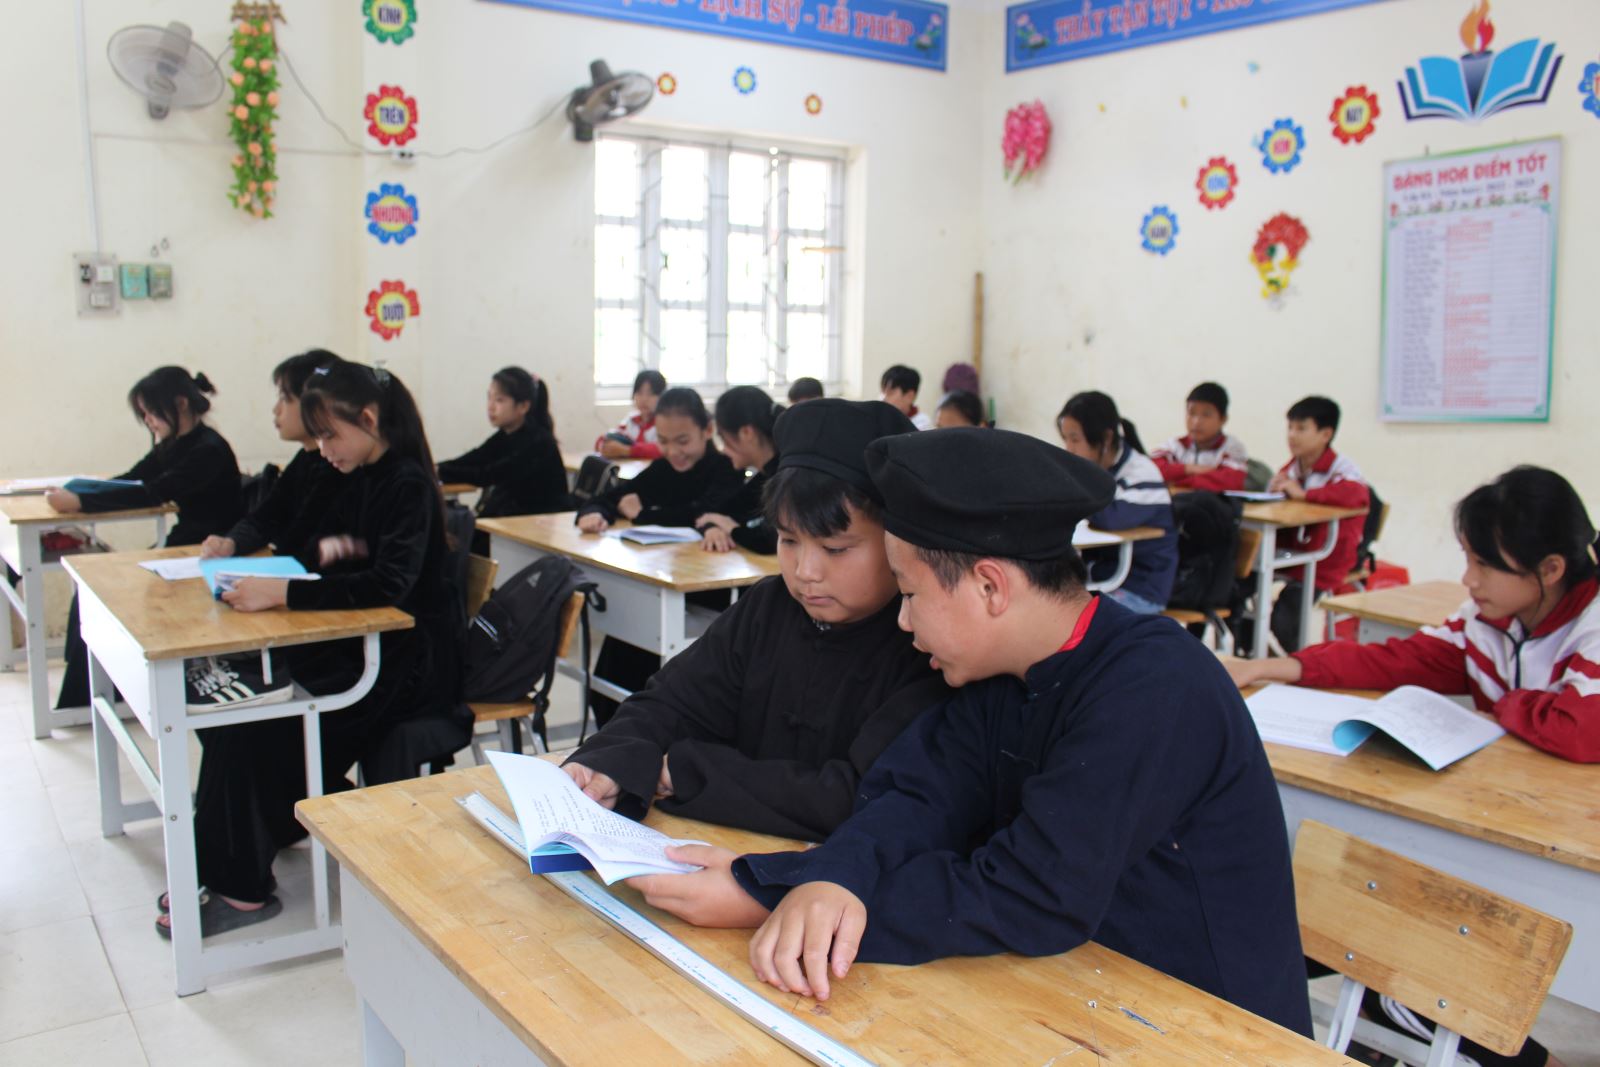 Câu lạc bộ học tiếng Tày của các em học sinh trường THCS Vân Sơn, Sơn Động, Bắc Giang